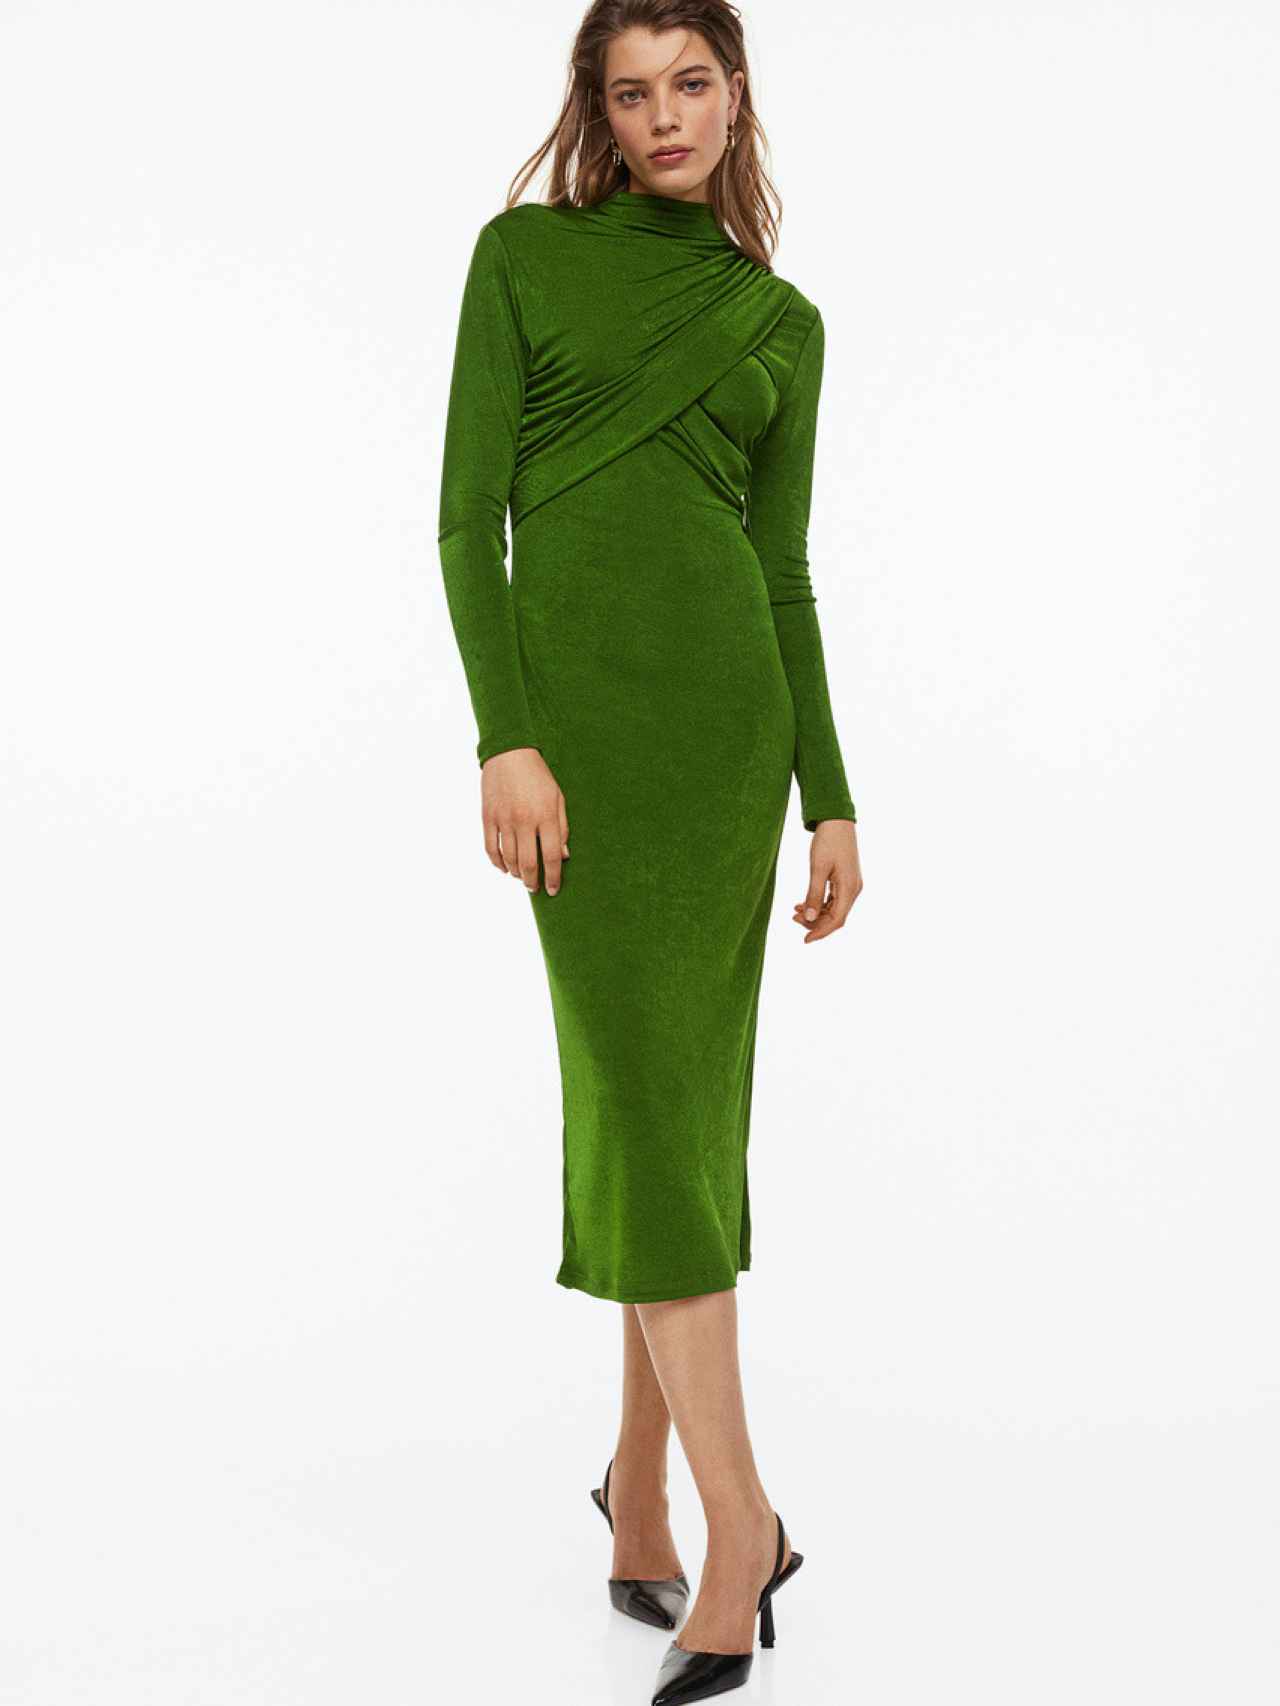 Vestido verde entallado de H&M.